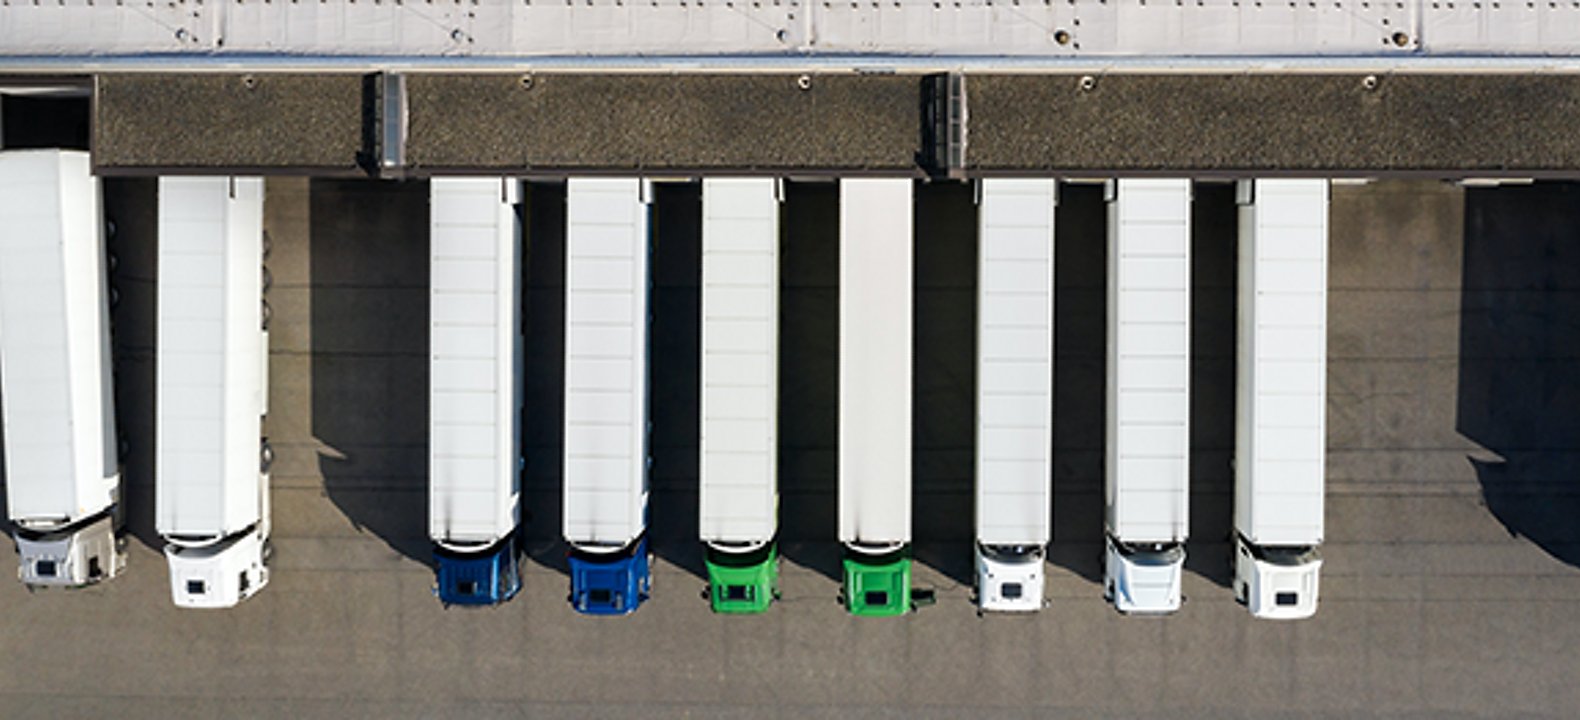 Vista aérea de camiones de 18 ruedas estacionados en un muelle de carga